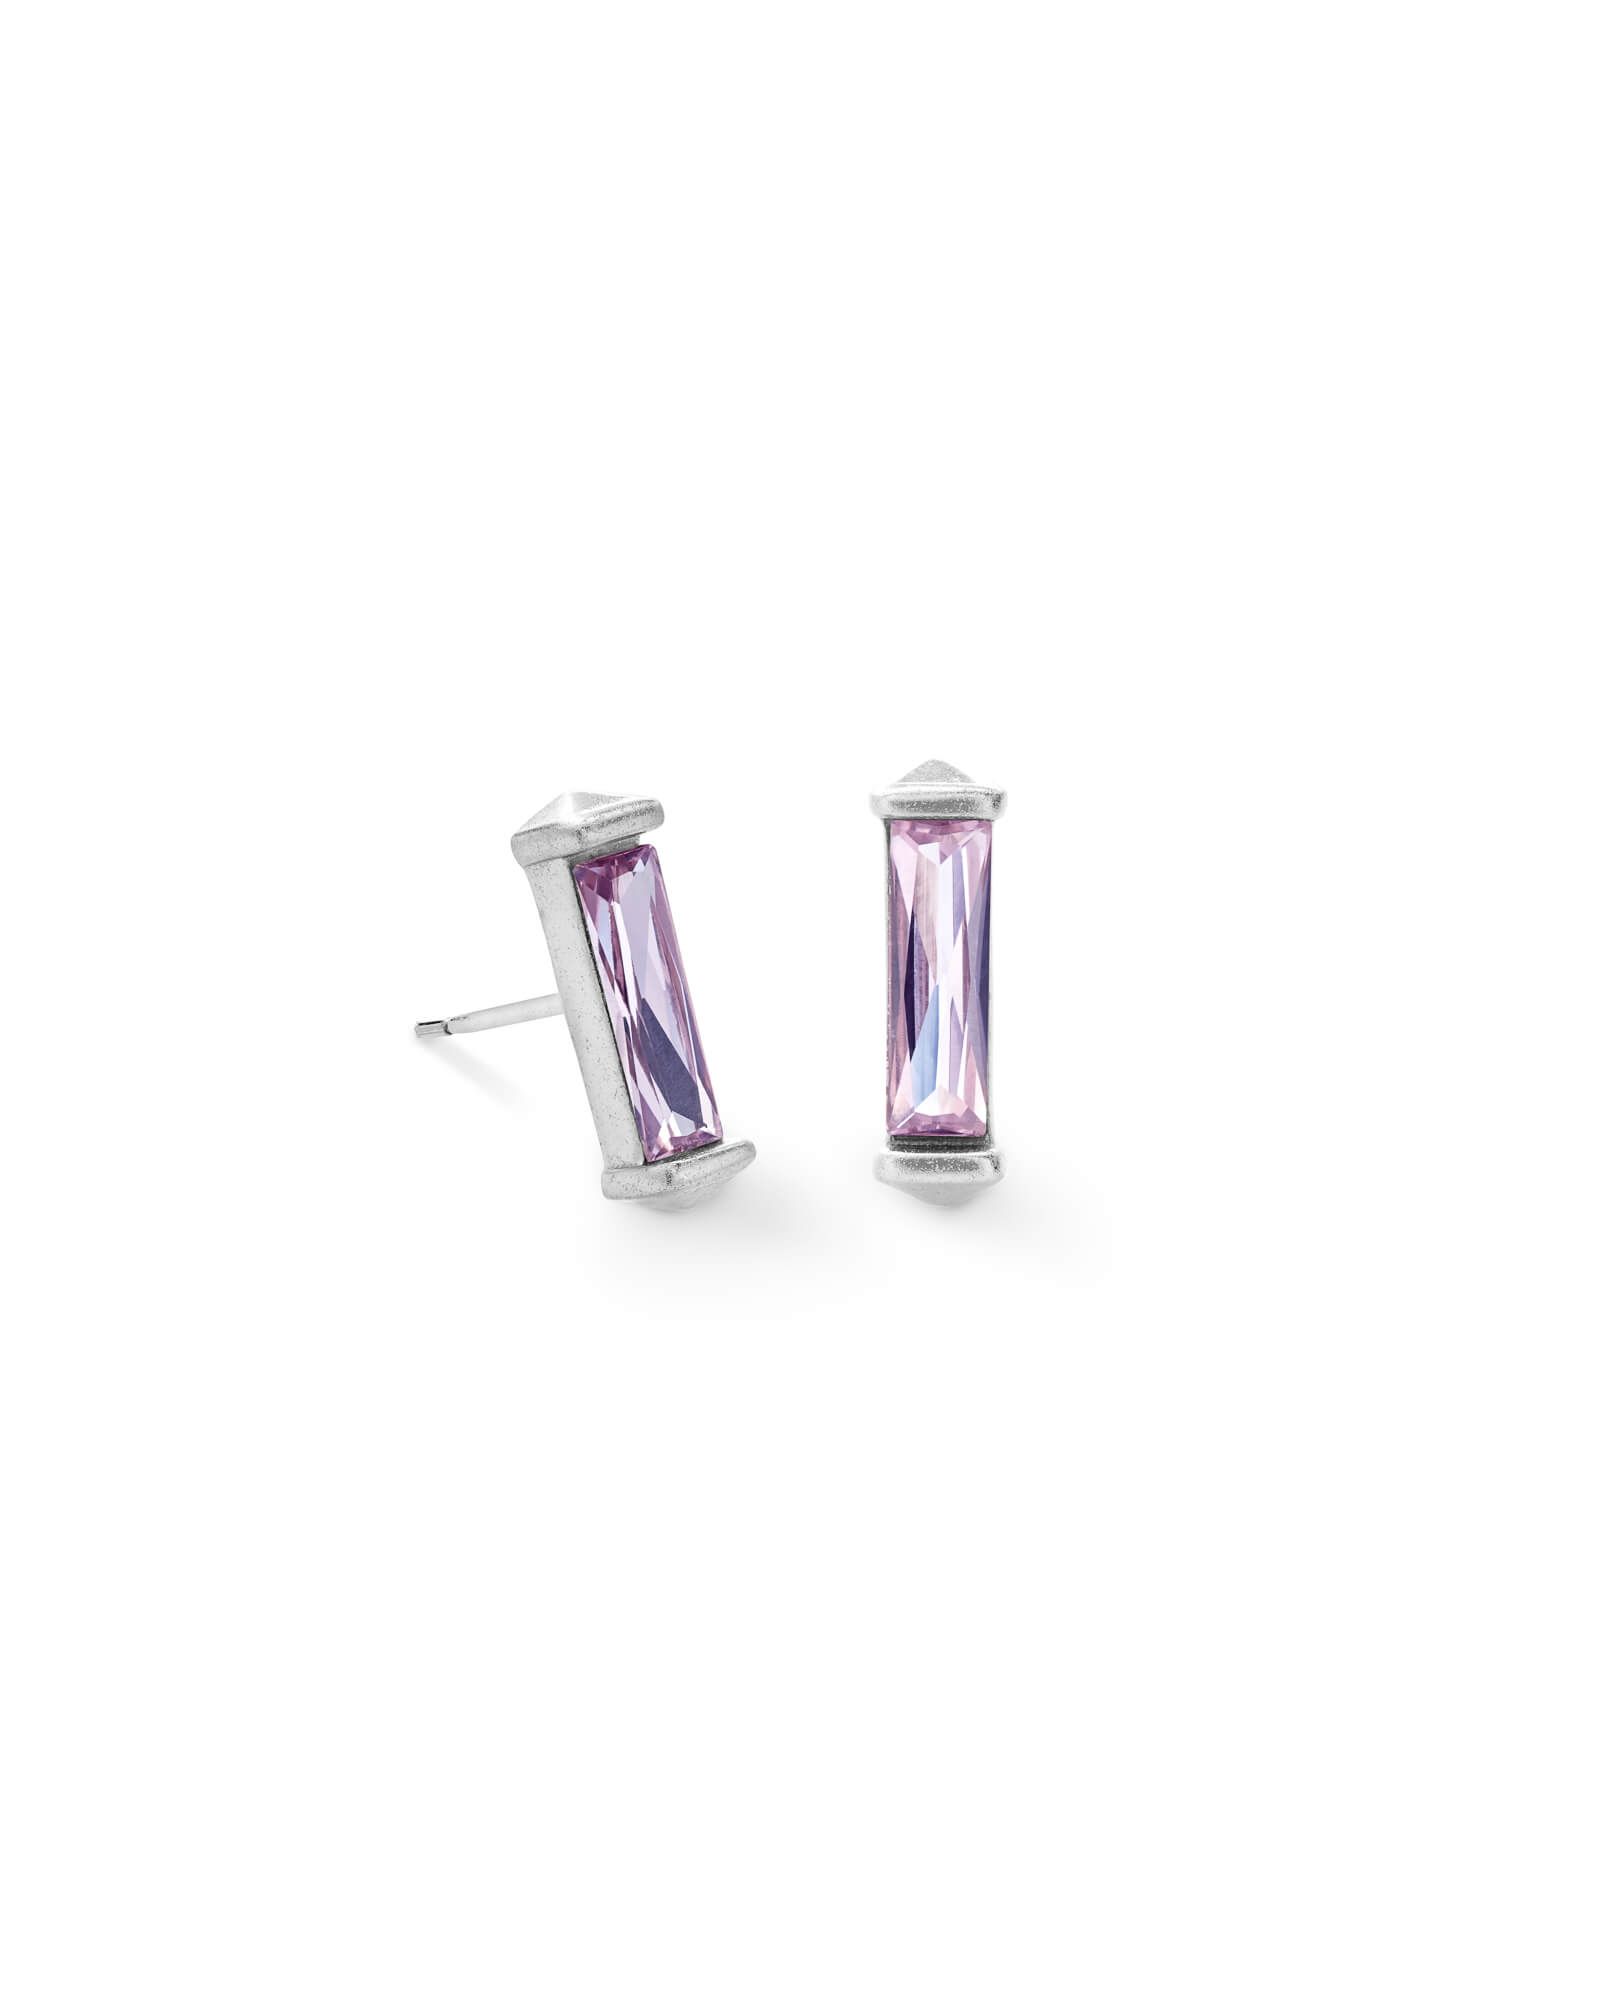 Fletcher Silver Stud Earrings in Lilac Crystal | Kendra Scott